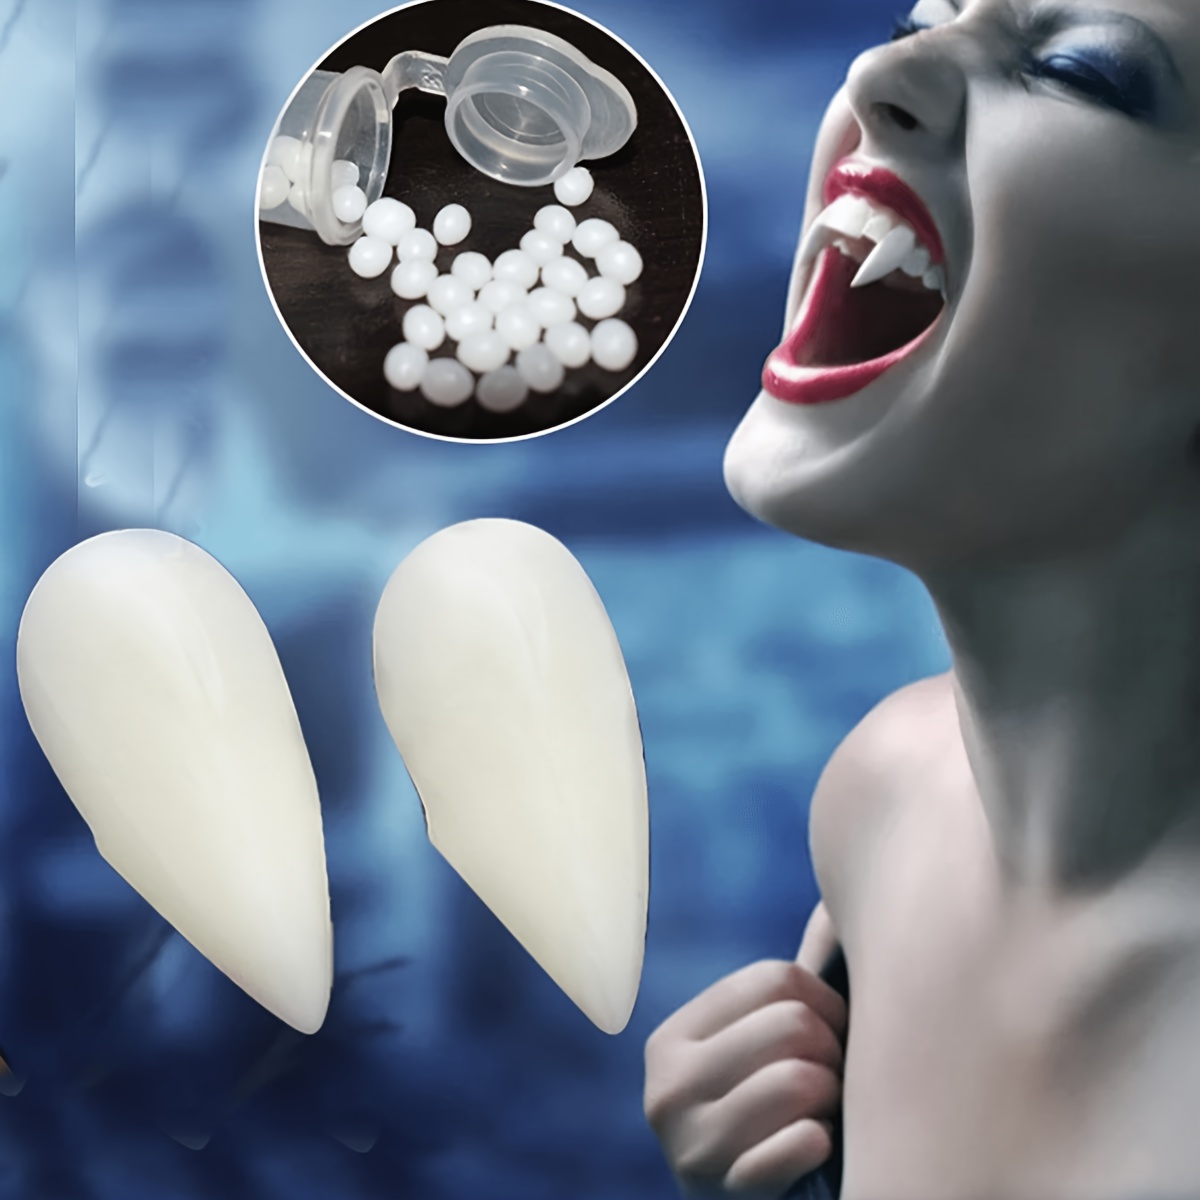 Dientes falsos de colmillos de vampiro de 3 tamaños con adhesivo, dientes  de vampiro realistas reutilizables para fiesta de Halloween, cosplay